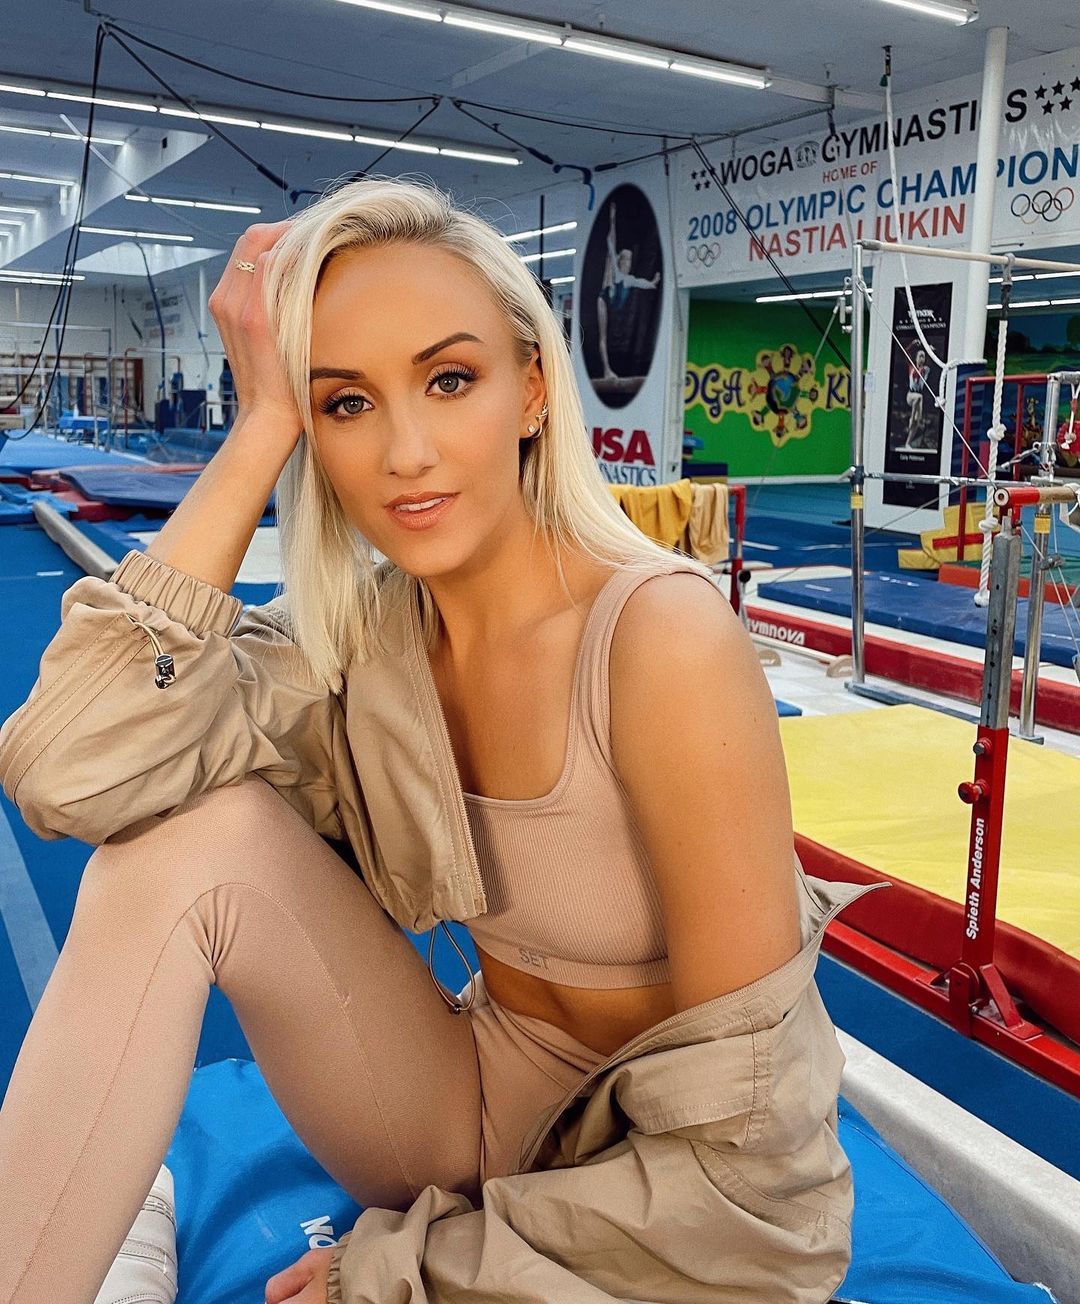 Nastia Liukin poses in a gym.